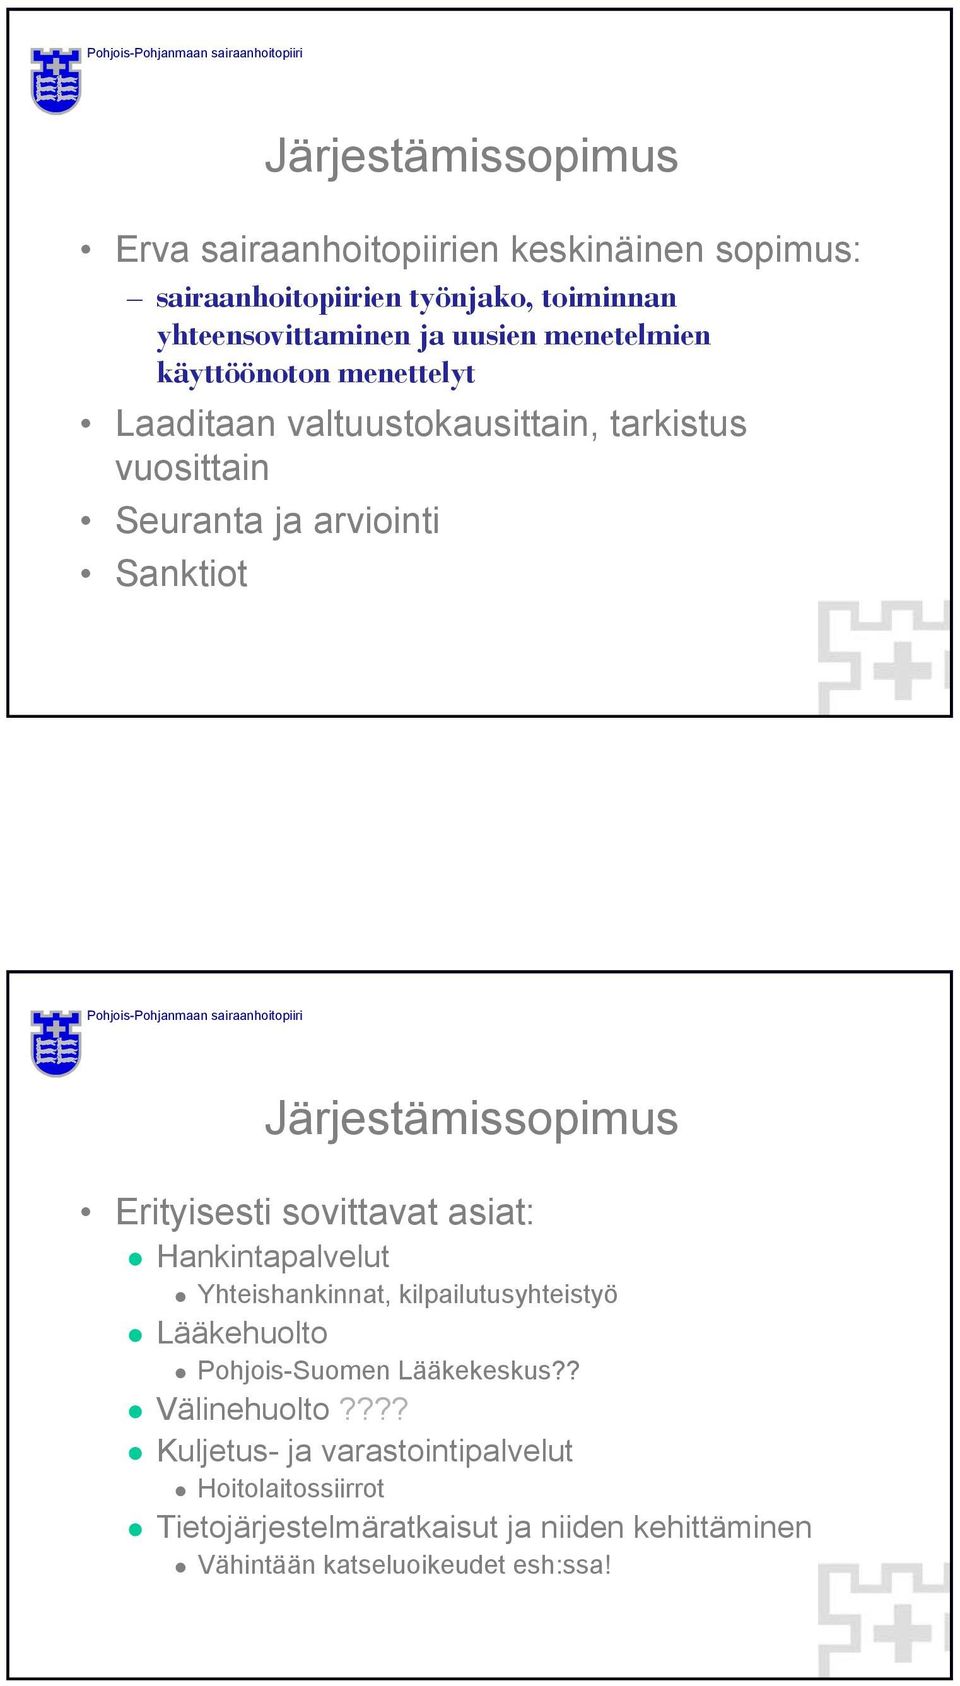 Erityisesti sovittavat asiat: Hankintapalvelut Yhteishankinnat, kilpailutusyhteistyö Lääkehuolto Pohjois-Suomen Lääkekeskus?? Välinehuolto?